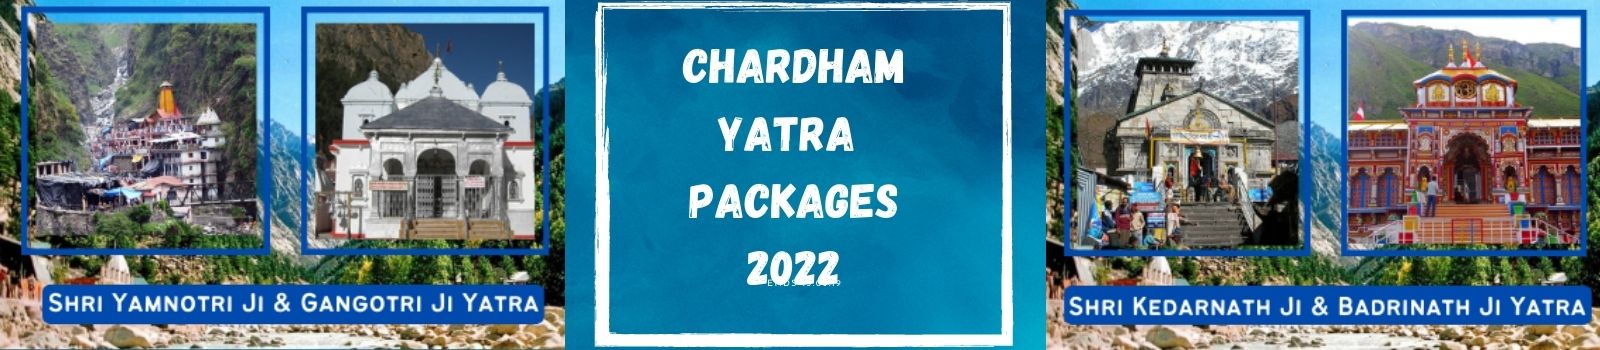 Chardham Yatra 2022